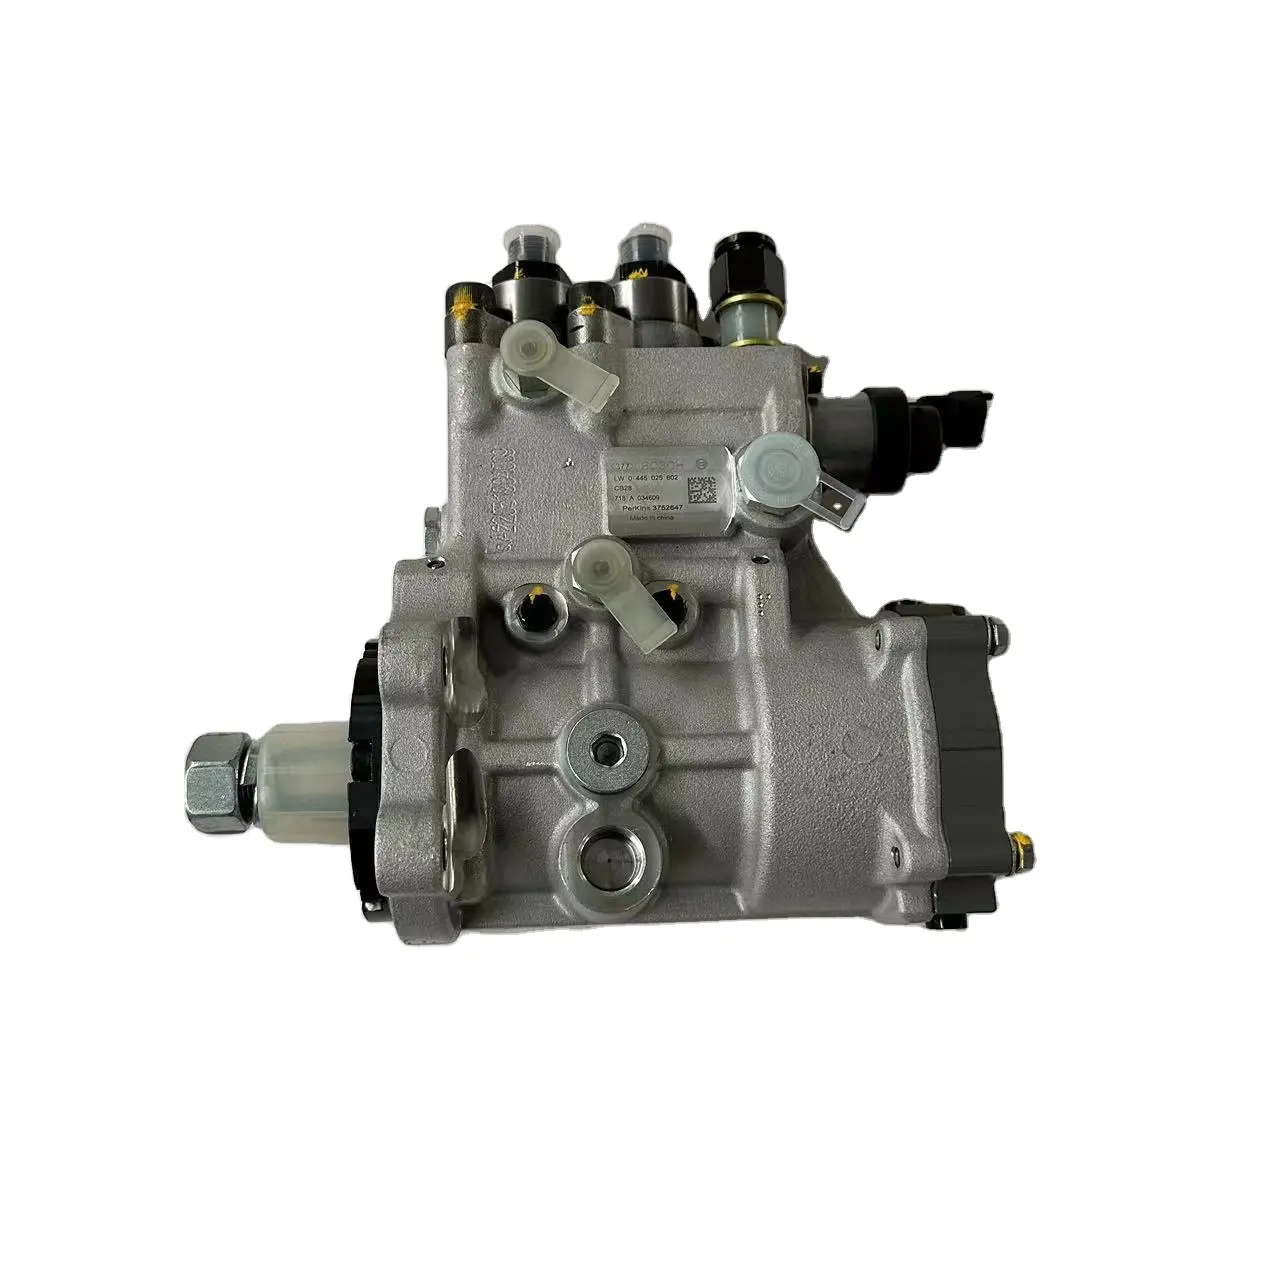 C4.4 C7.1 Engine Diesel Fuel Injector Pump 375-2647 3752647 0445025602 For Caterpillar E320d2 E323d2 E329d2 Cs74b